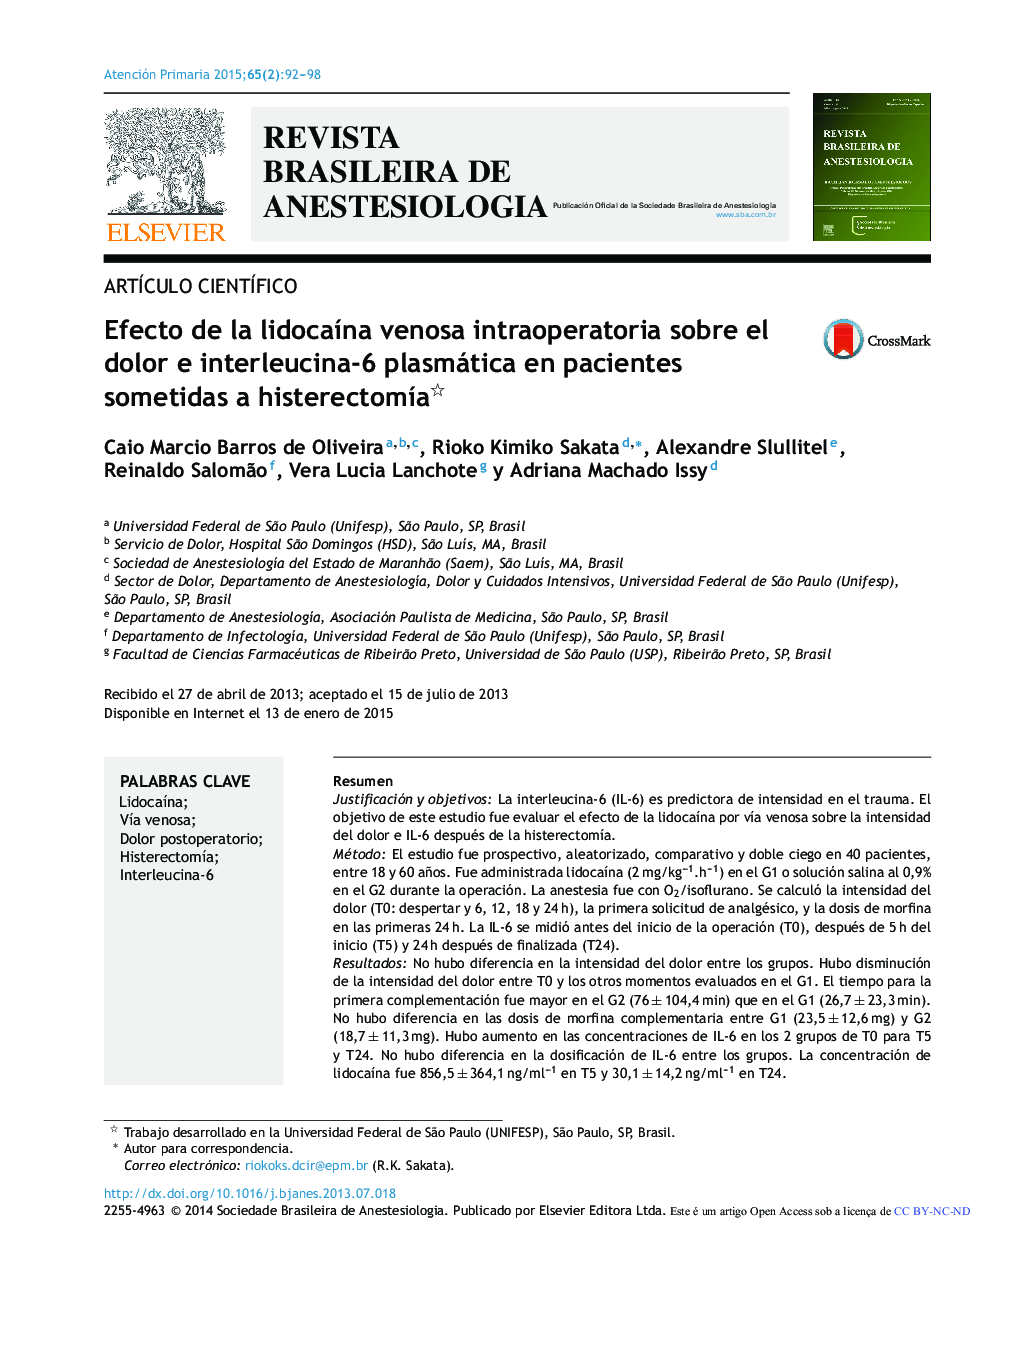 Efecto de la lidocaína venosa intraoperatoria sobre el dolor e interleucina-6 plasmática en pacientes sometidas a histerectomía 